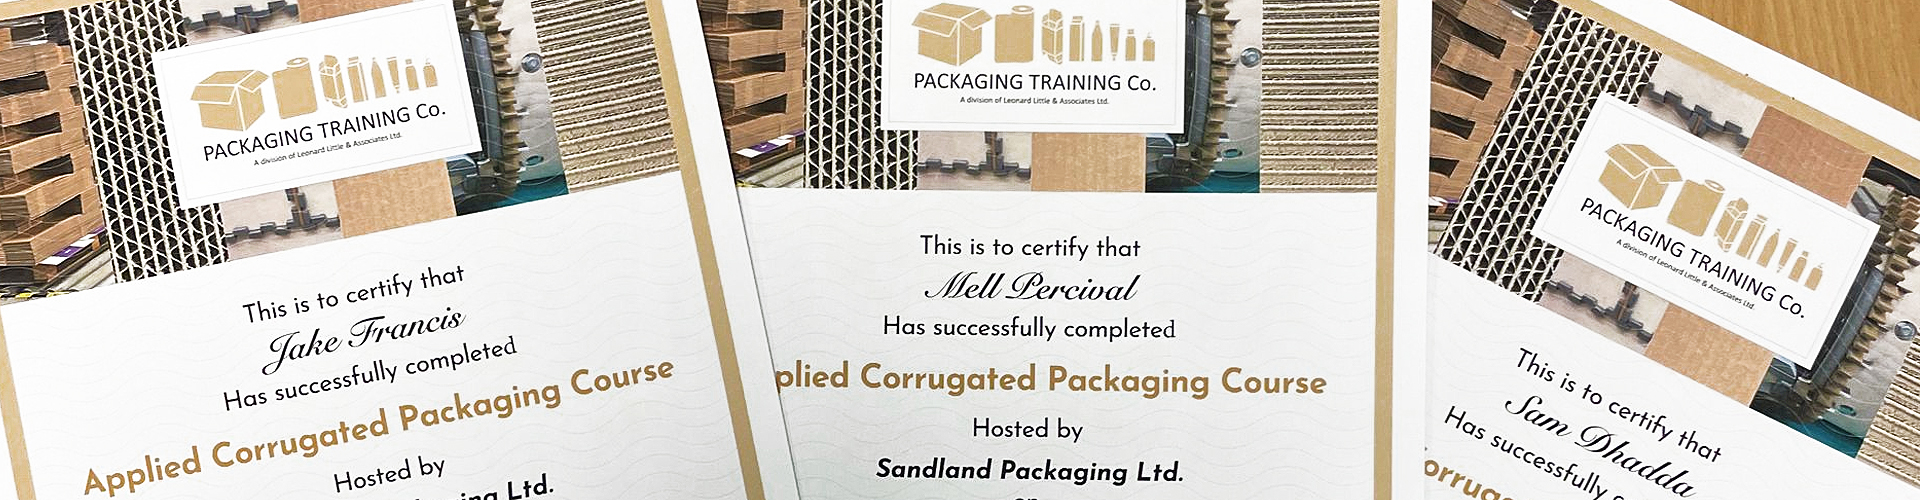 Sandland Packaging staff complete cardboard school